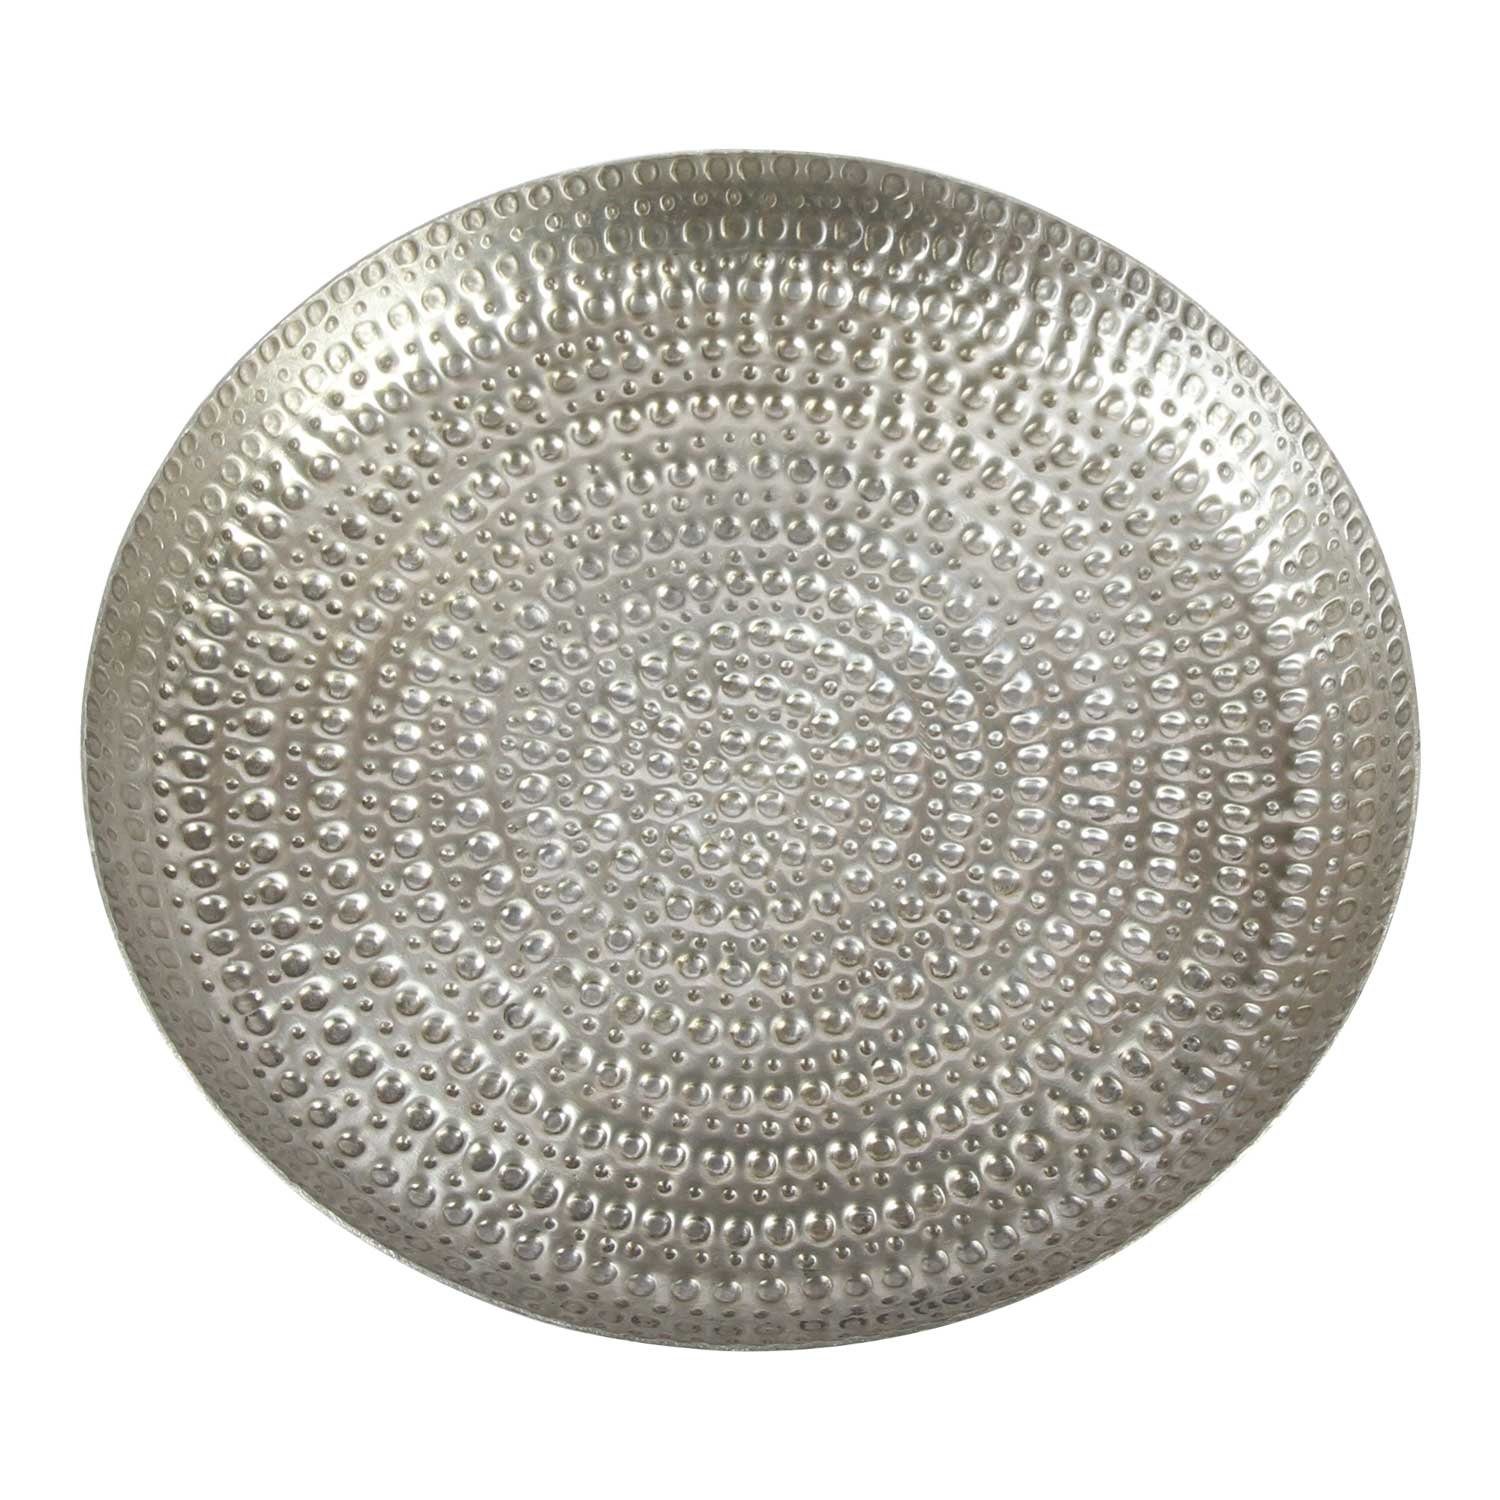 Casa Moro Tablett Orientalisches Teetablett Serviertablett Zana Ø 30 cm Boho Chic, Aluminium, (Handgefertigt), Boho Chic Tablett gehämmert Silber